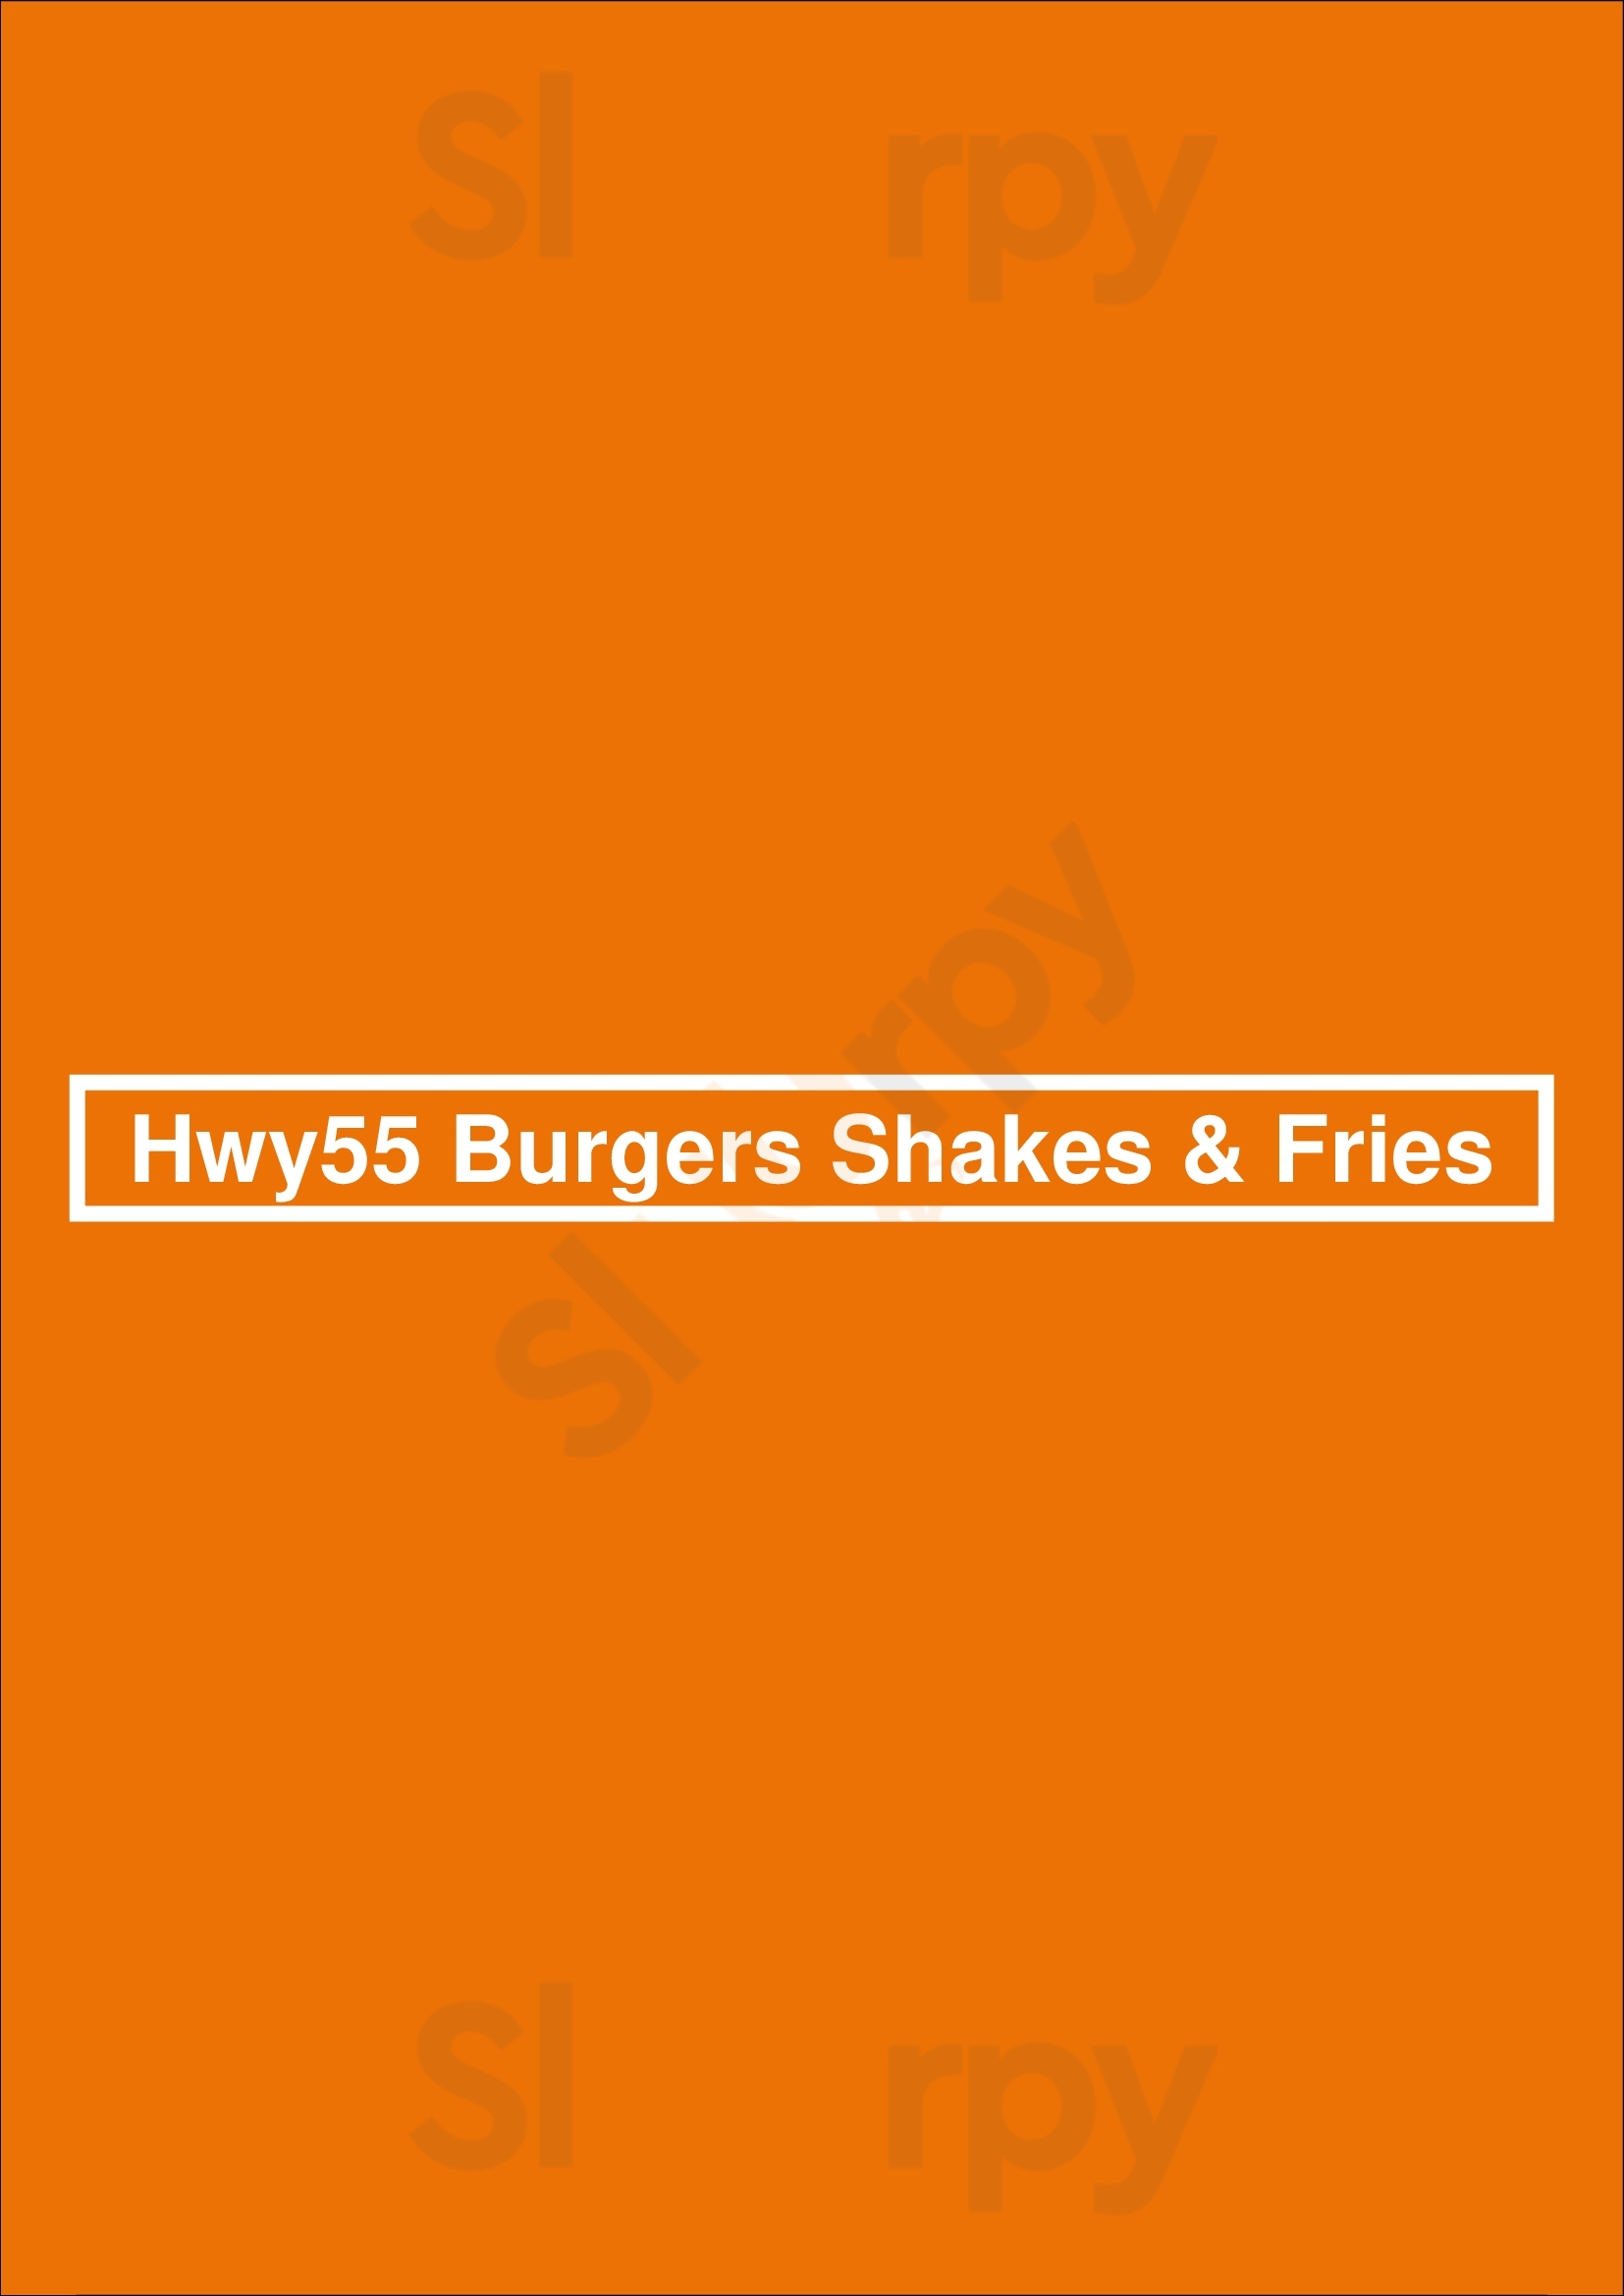 Hwy55 Burgers Shakes & Fries Bedford Menu - 1